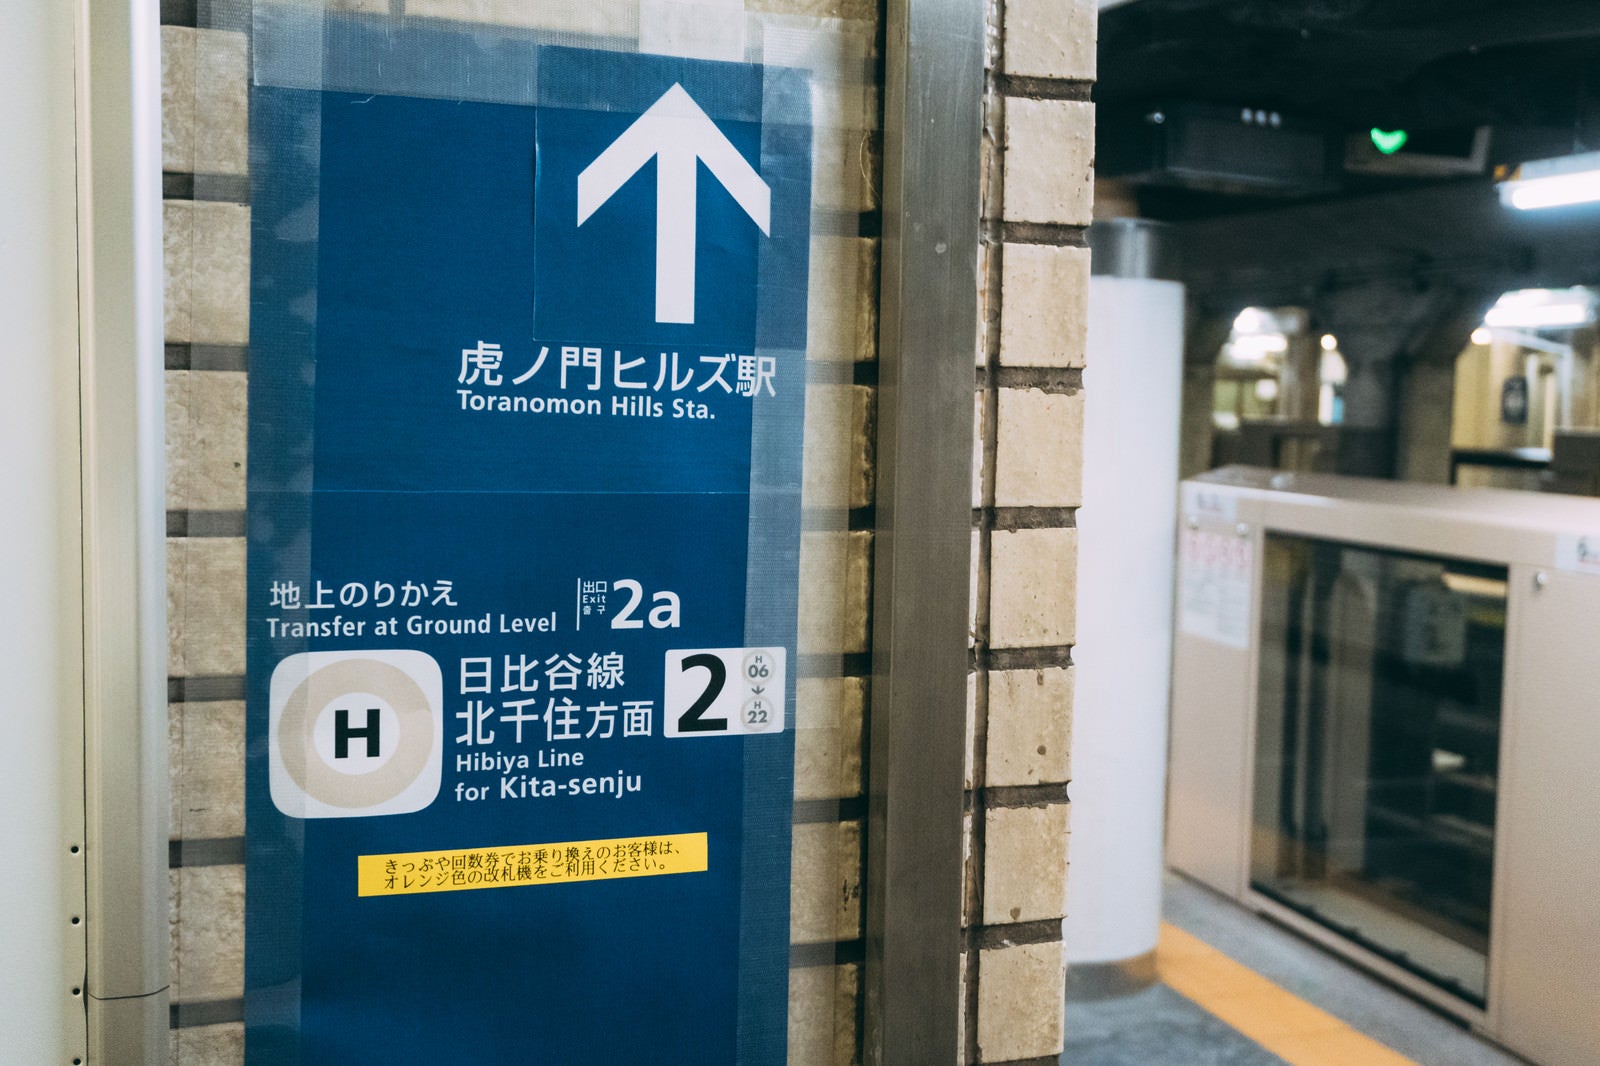 「虎ノ門ヒルズ駅を示す矢印（仮設の案内板）」の写真